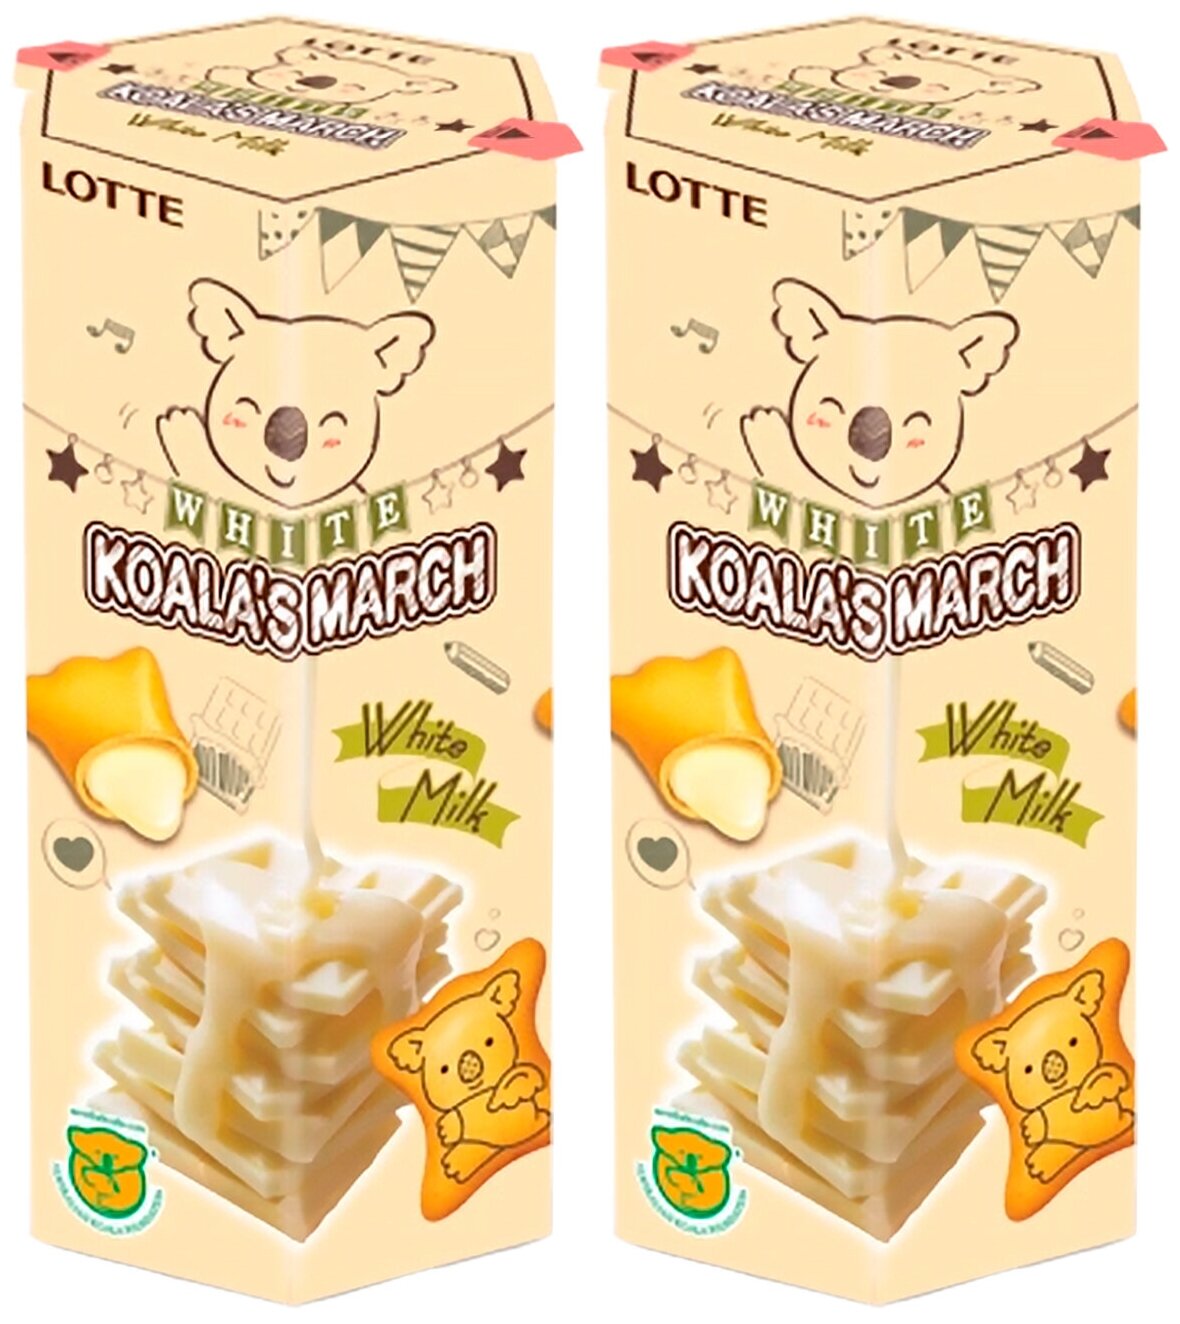 Печенье подушечки Lotte Koala's March White Milk с мочно-сырной начинкой (2 шт. по 37 гр.) - фотография № 1